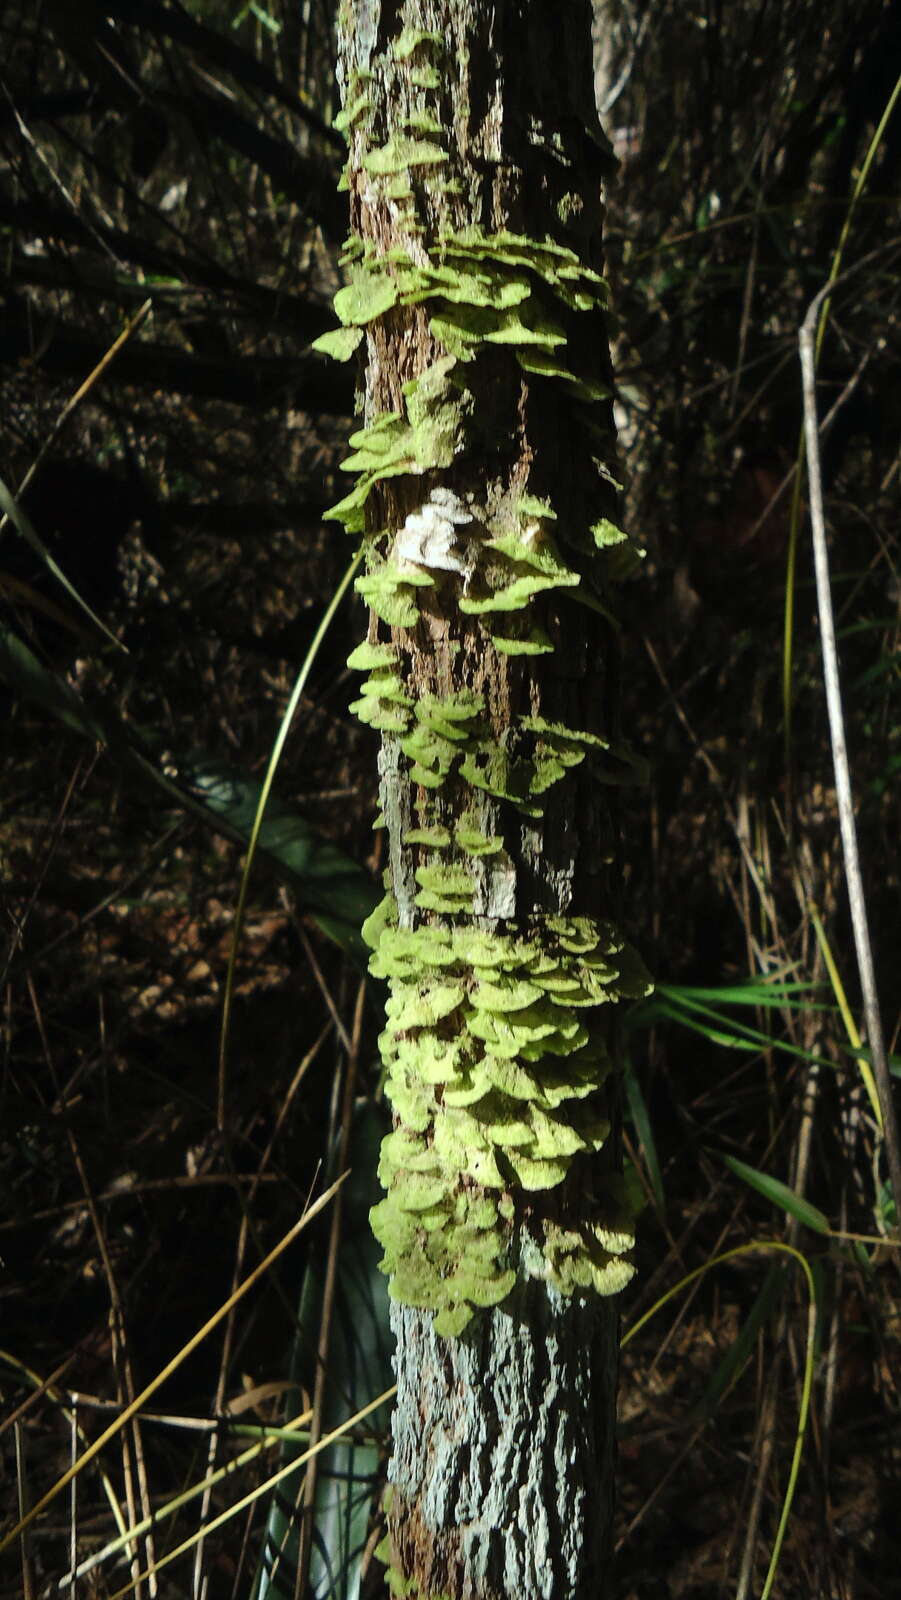 Sivun Coenogonium kuva